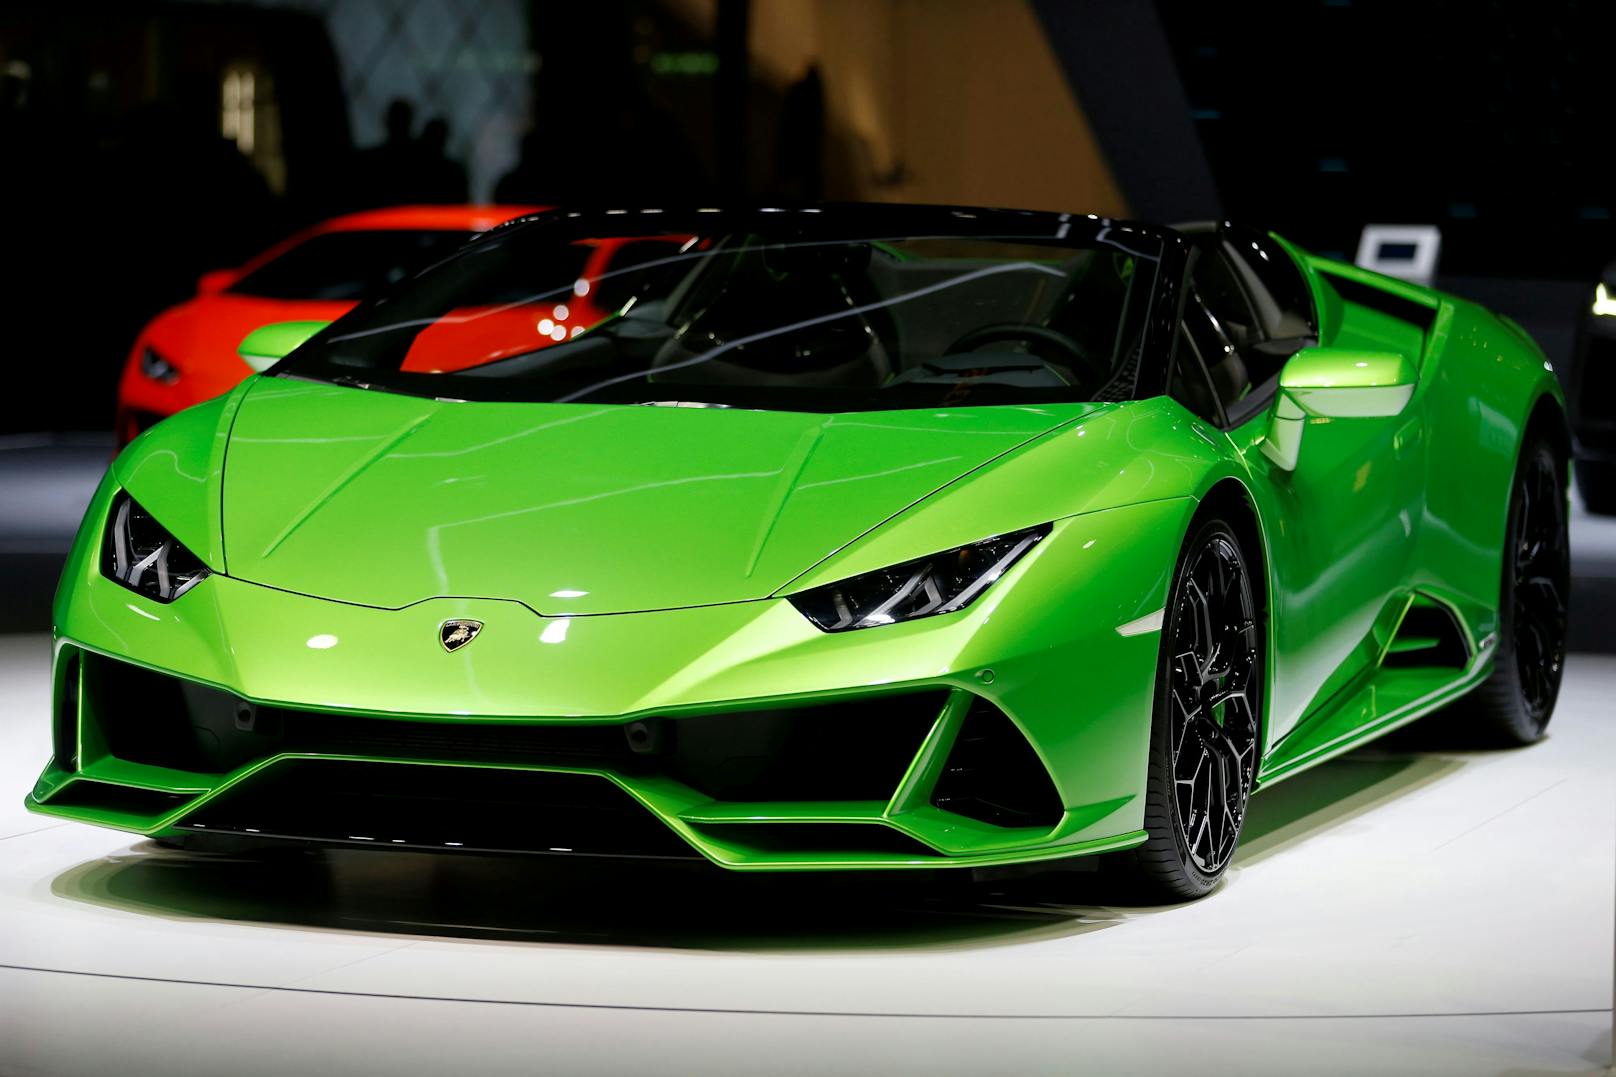 Beide Lamborghinis werden jeweils auf einen Wert von 580.000€ geschätzt. (Symbolbild)